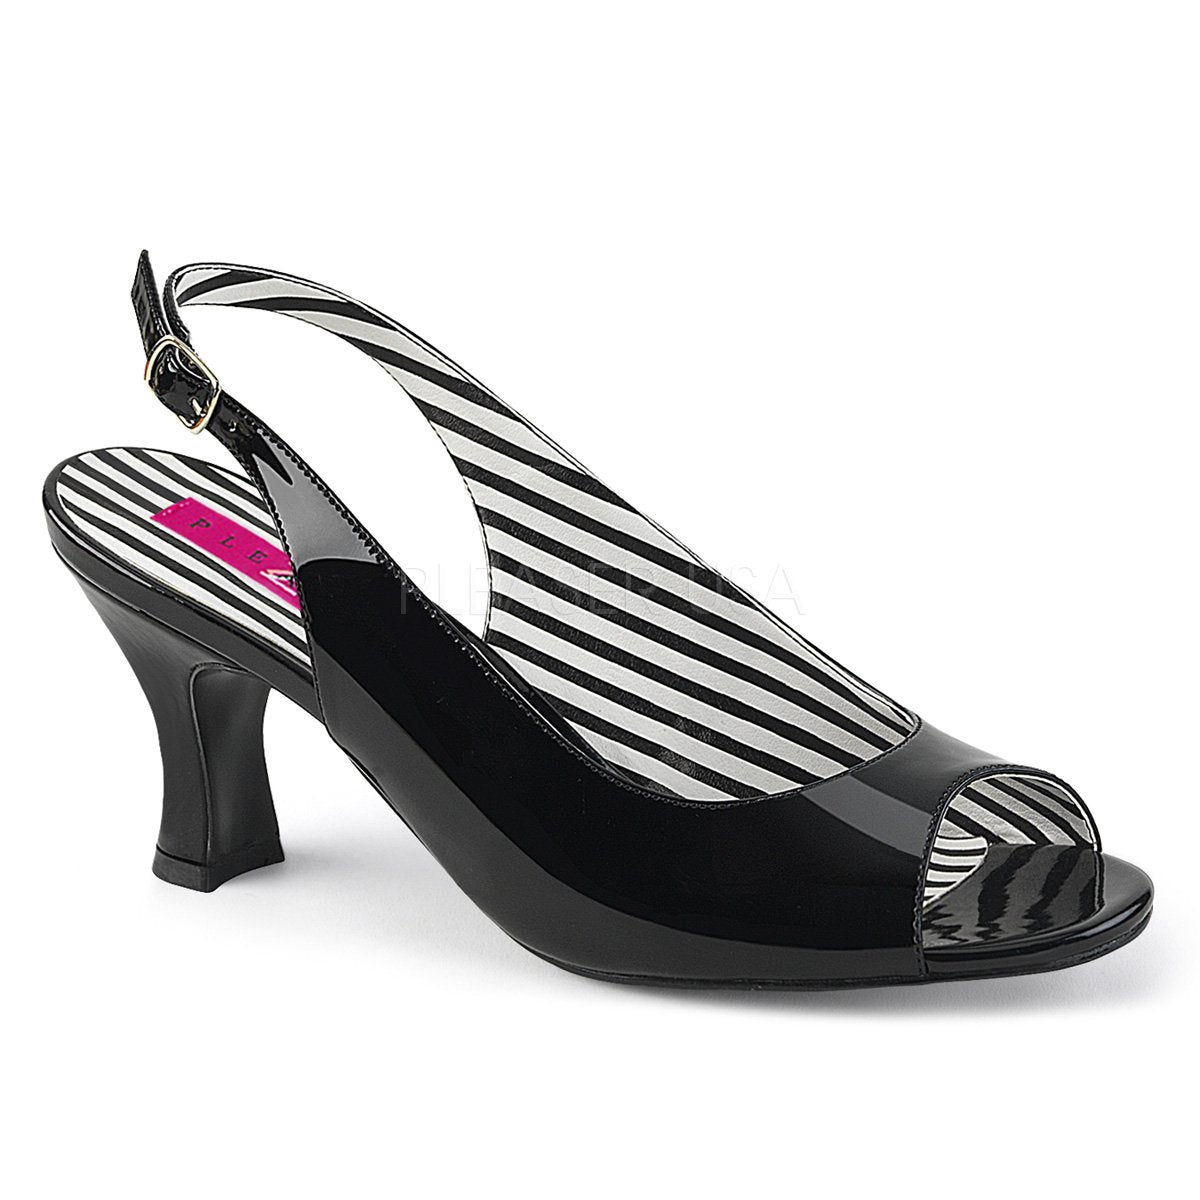 La_ Femme - Navy Block Heel Court shoes Heel: 3